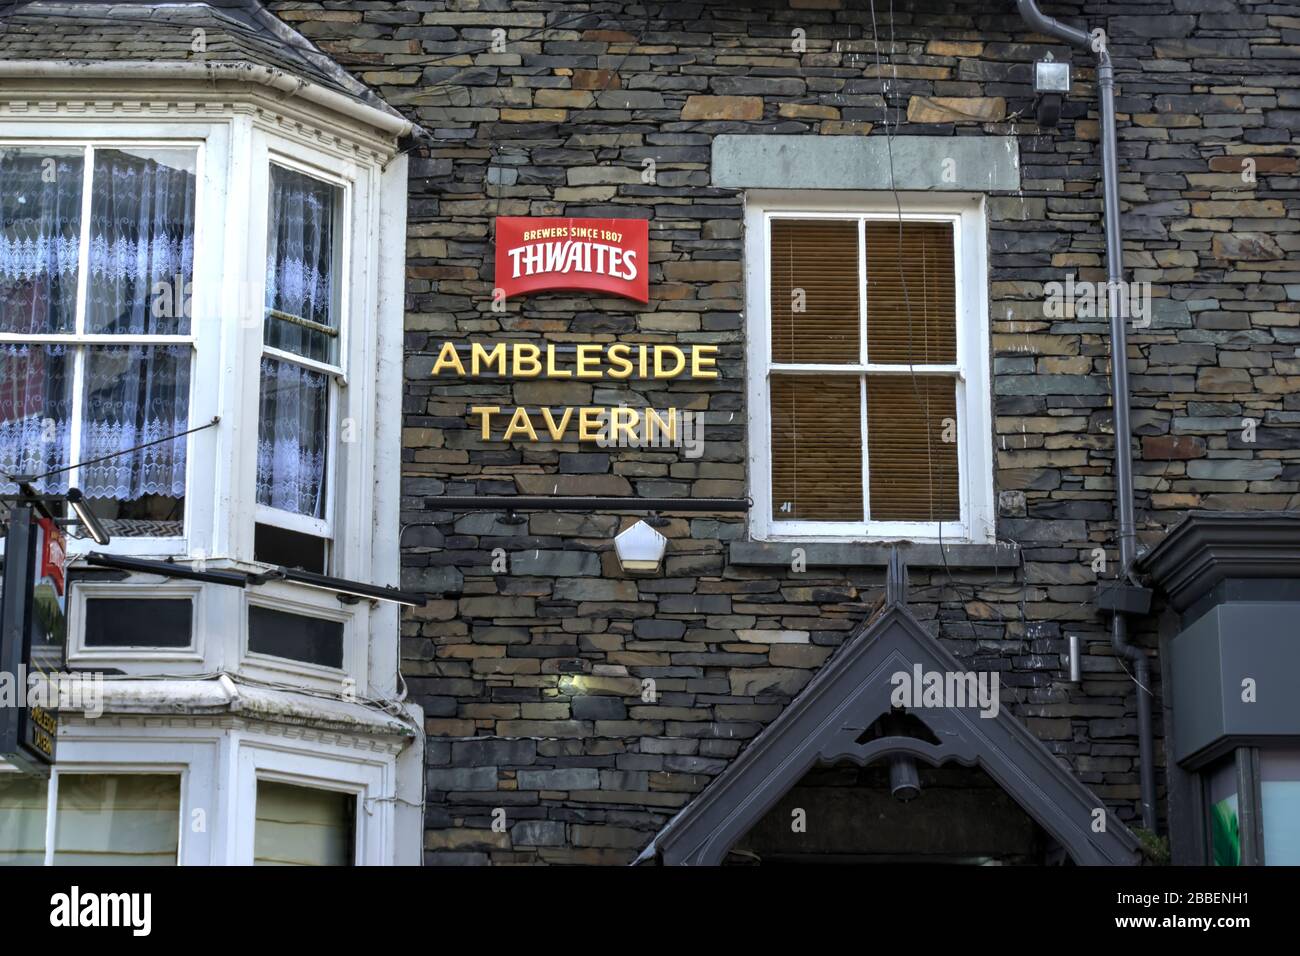 Ambleside, Cumbria, United Kingdom - May 16, 2019: Signage on drystone wall indicating Thwaites brewery and Ambleside Tavern Stock Photo